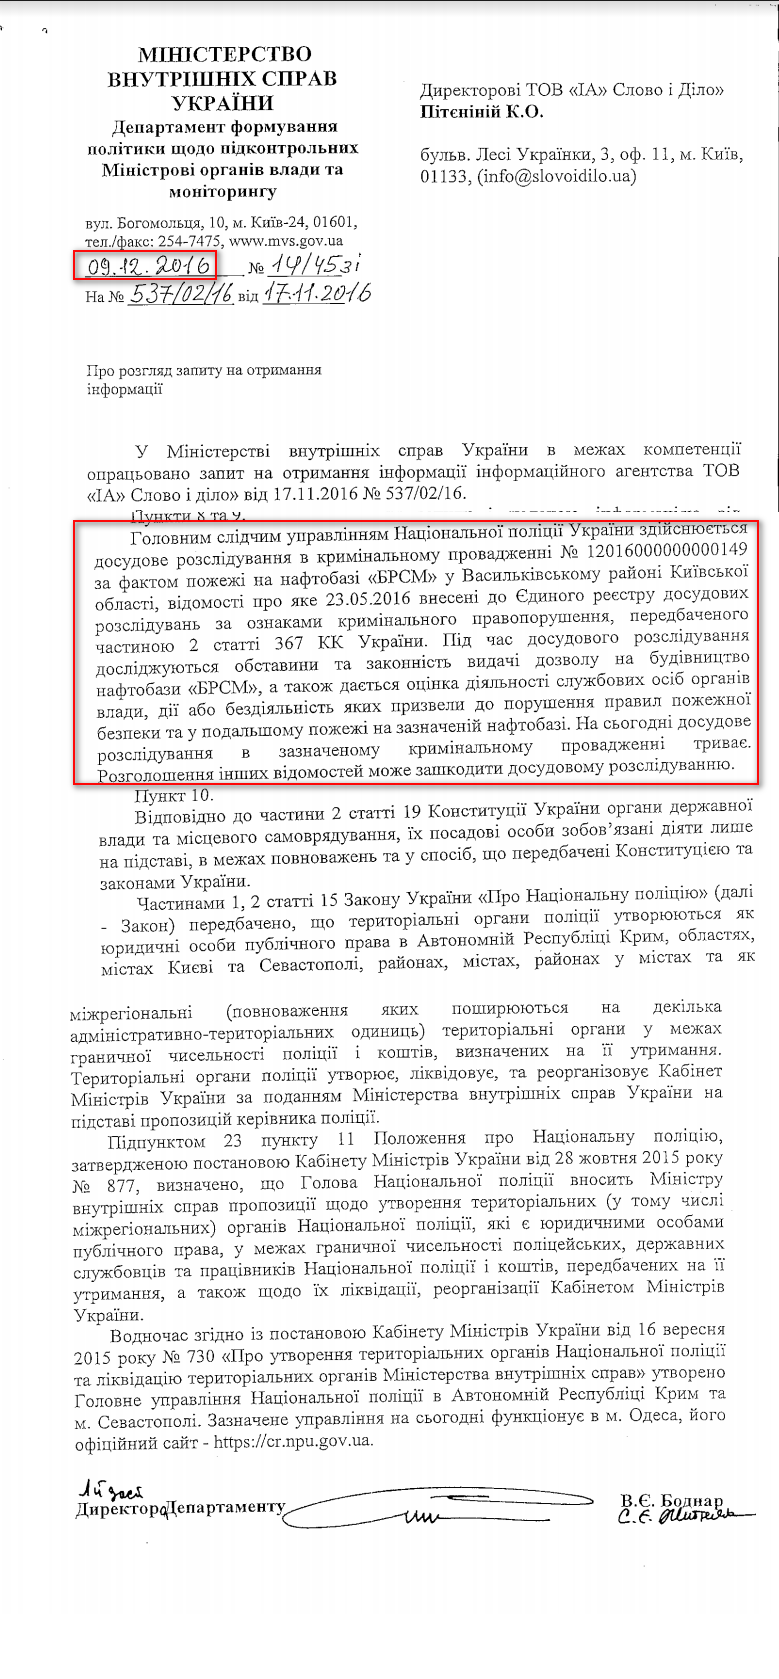 Лист Міністерства внутрішніх справ України від 9 грудня 2016 року